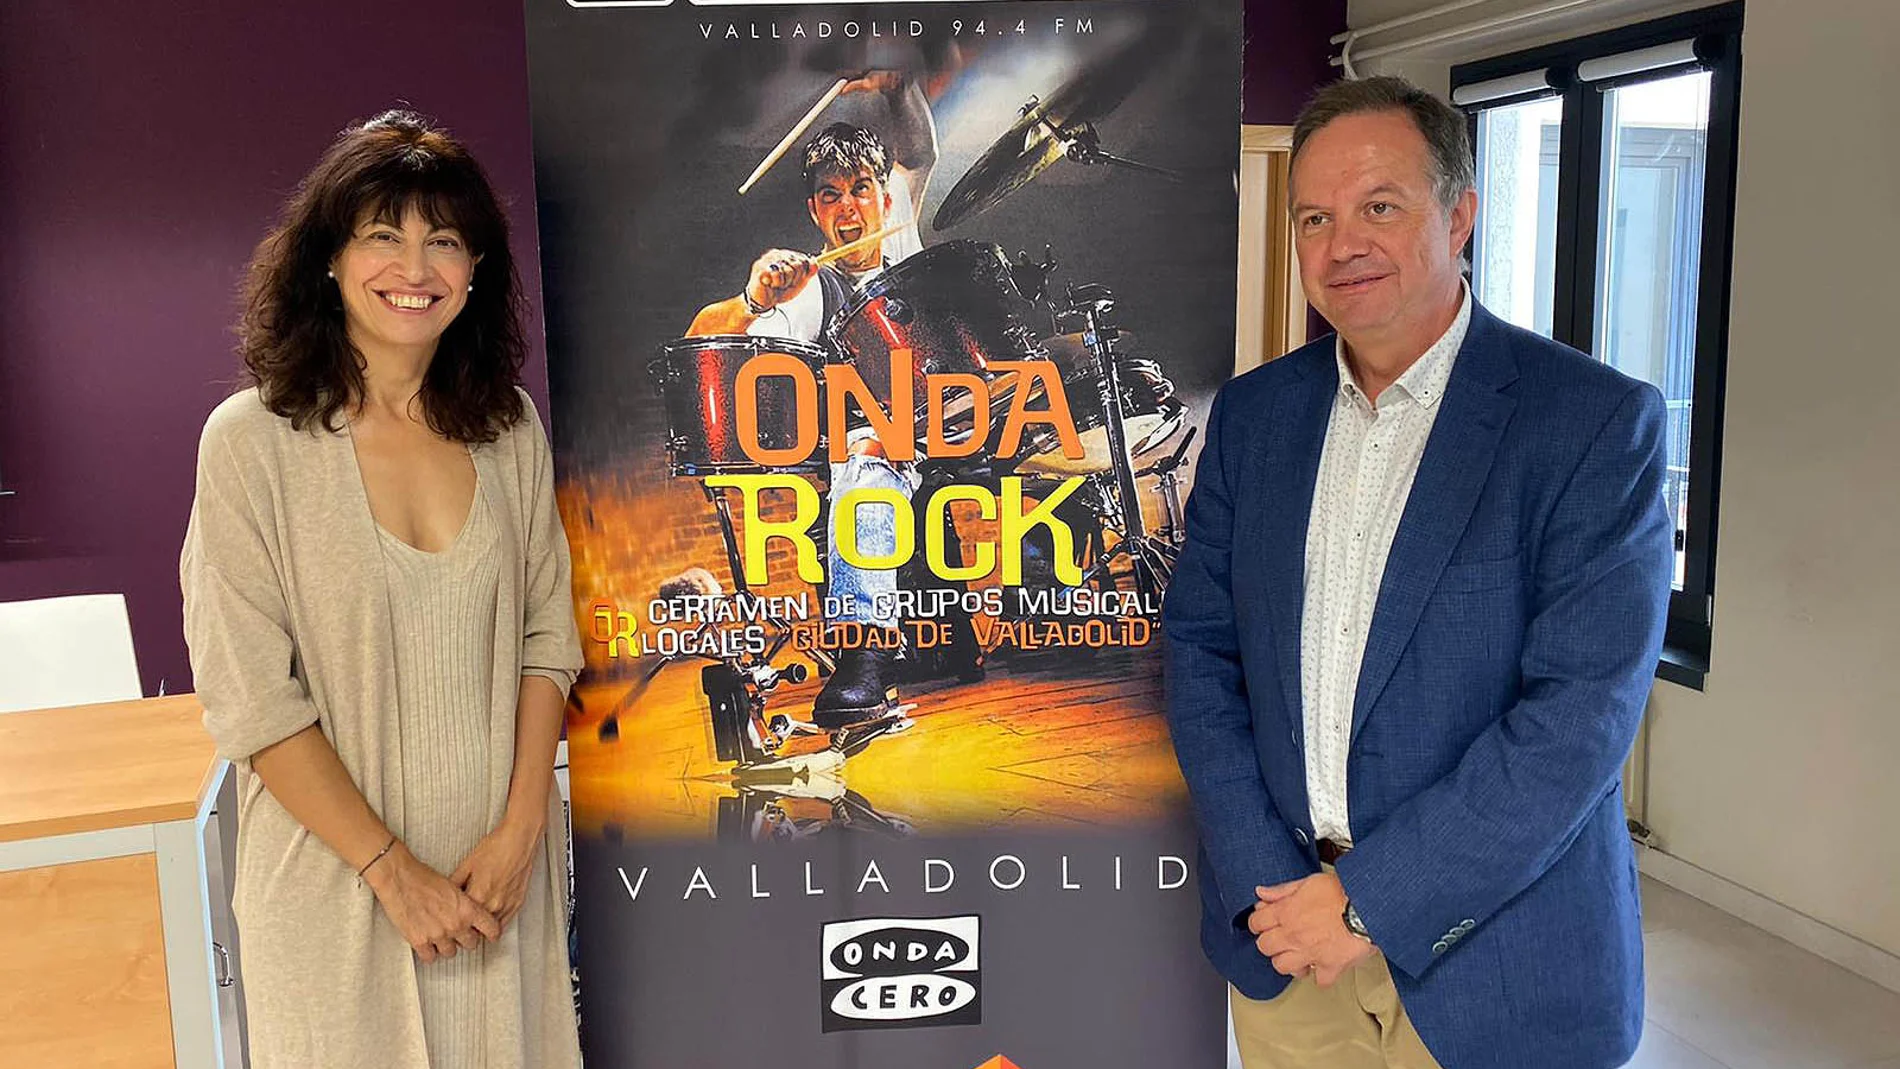 La concejala de Cultura y Turismo, Ana Redondo, y el director regional de Onda Cero, Ignacio Fernández Sobrino, presentan la XVI edición de Onda Rock